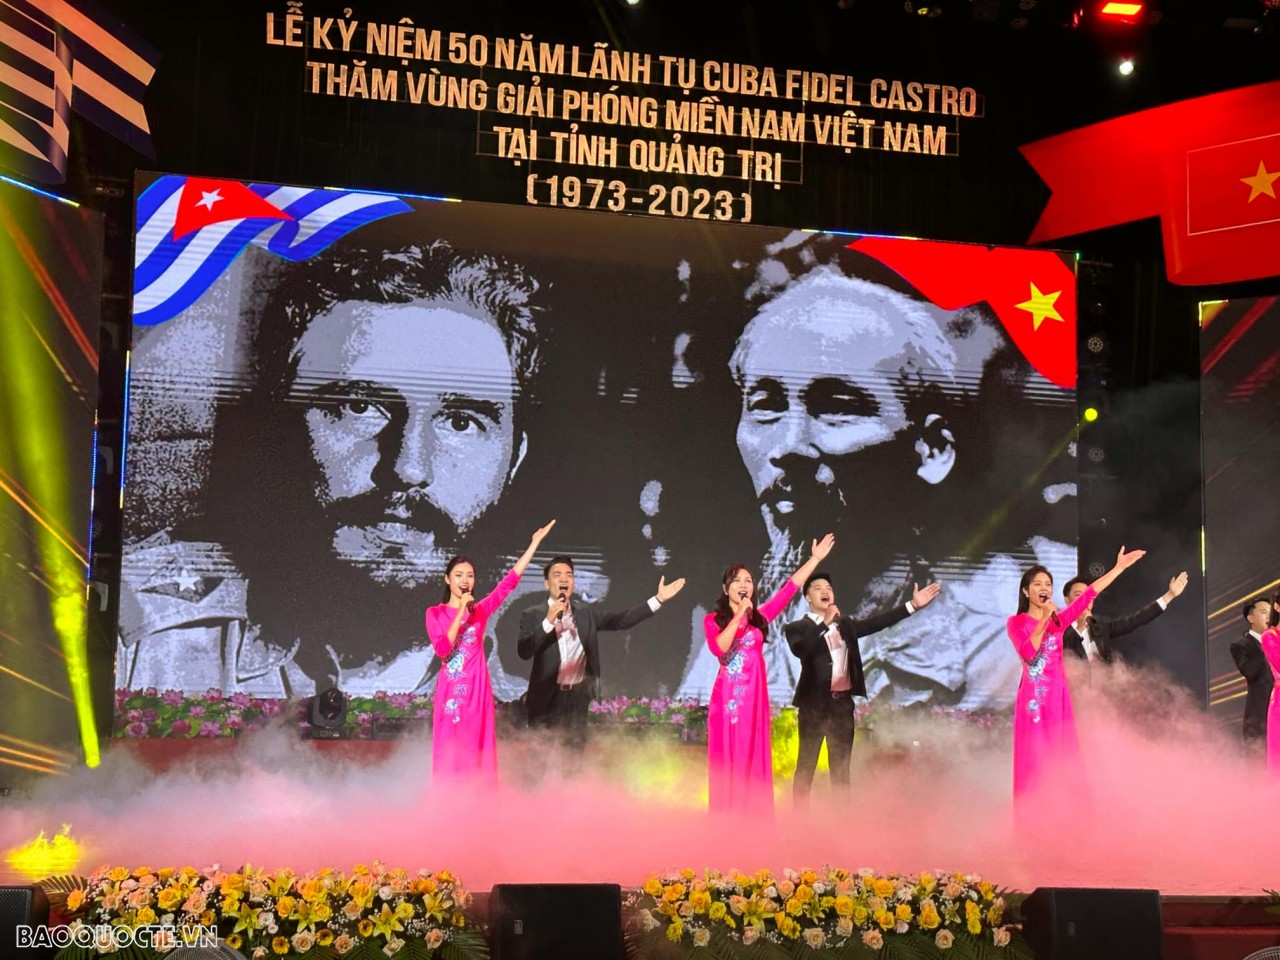 Việt Nam-Cuba trang trọng kỷ niệm 50 năm Lãnh tụ Fidel Castro thăm vùng Giải phóng miền Nam tại Quảng Trị